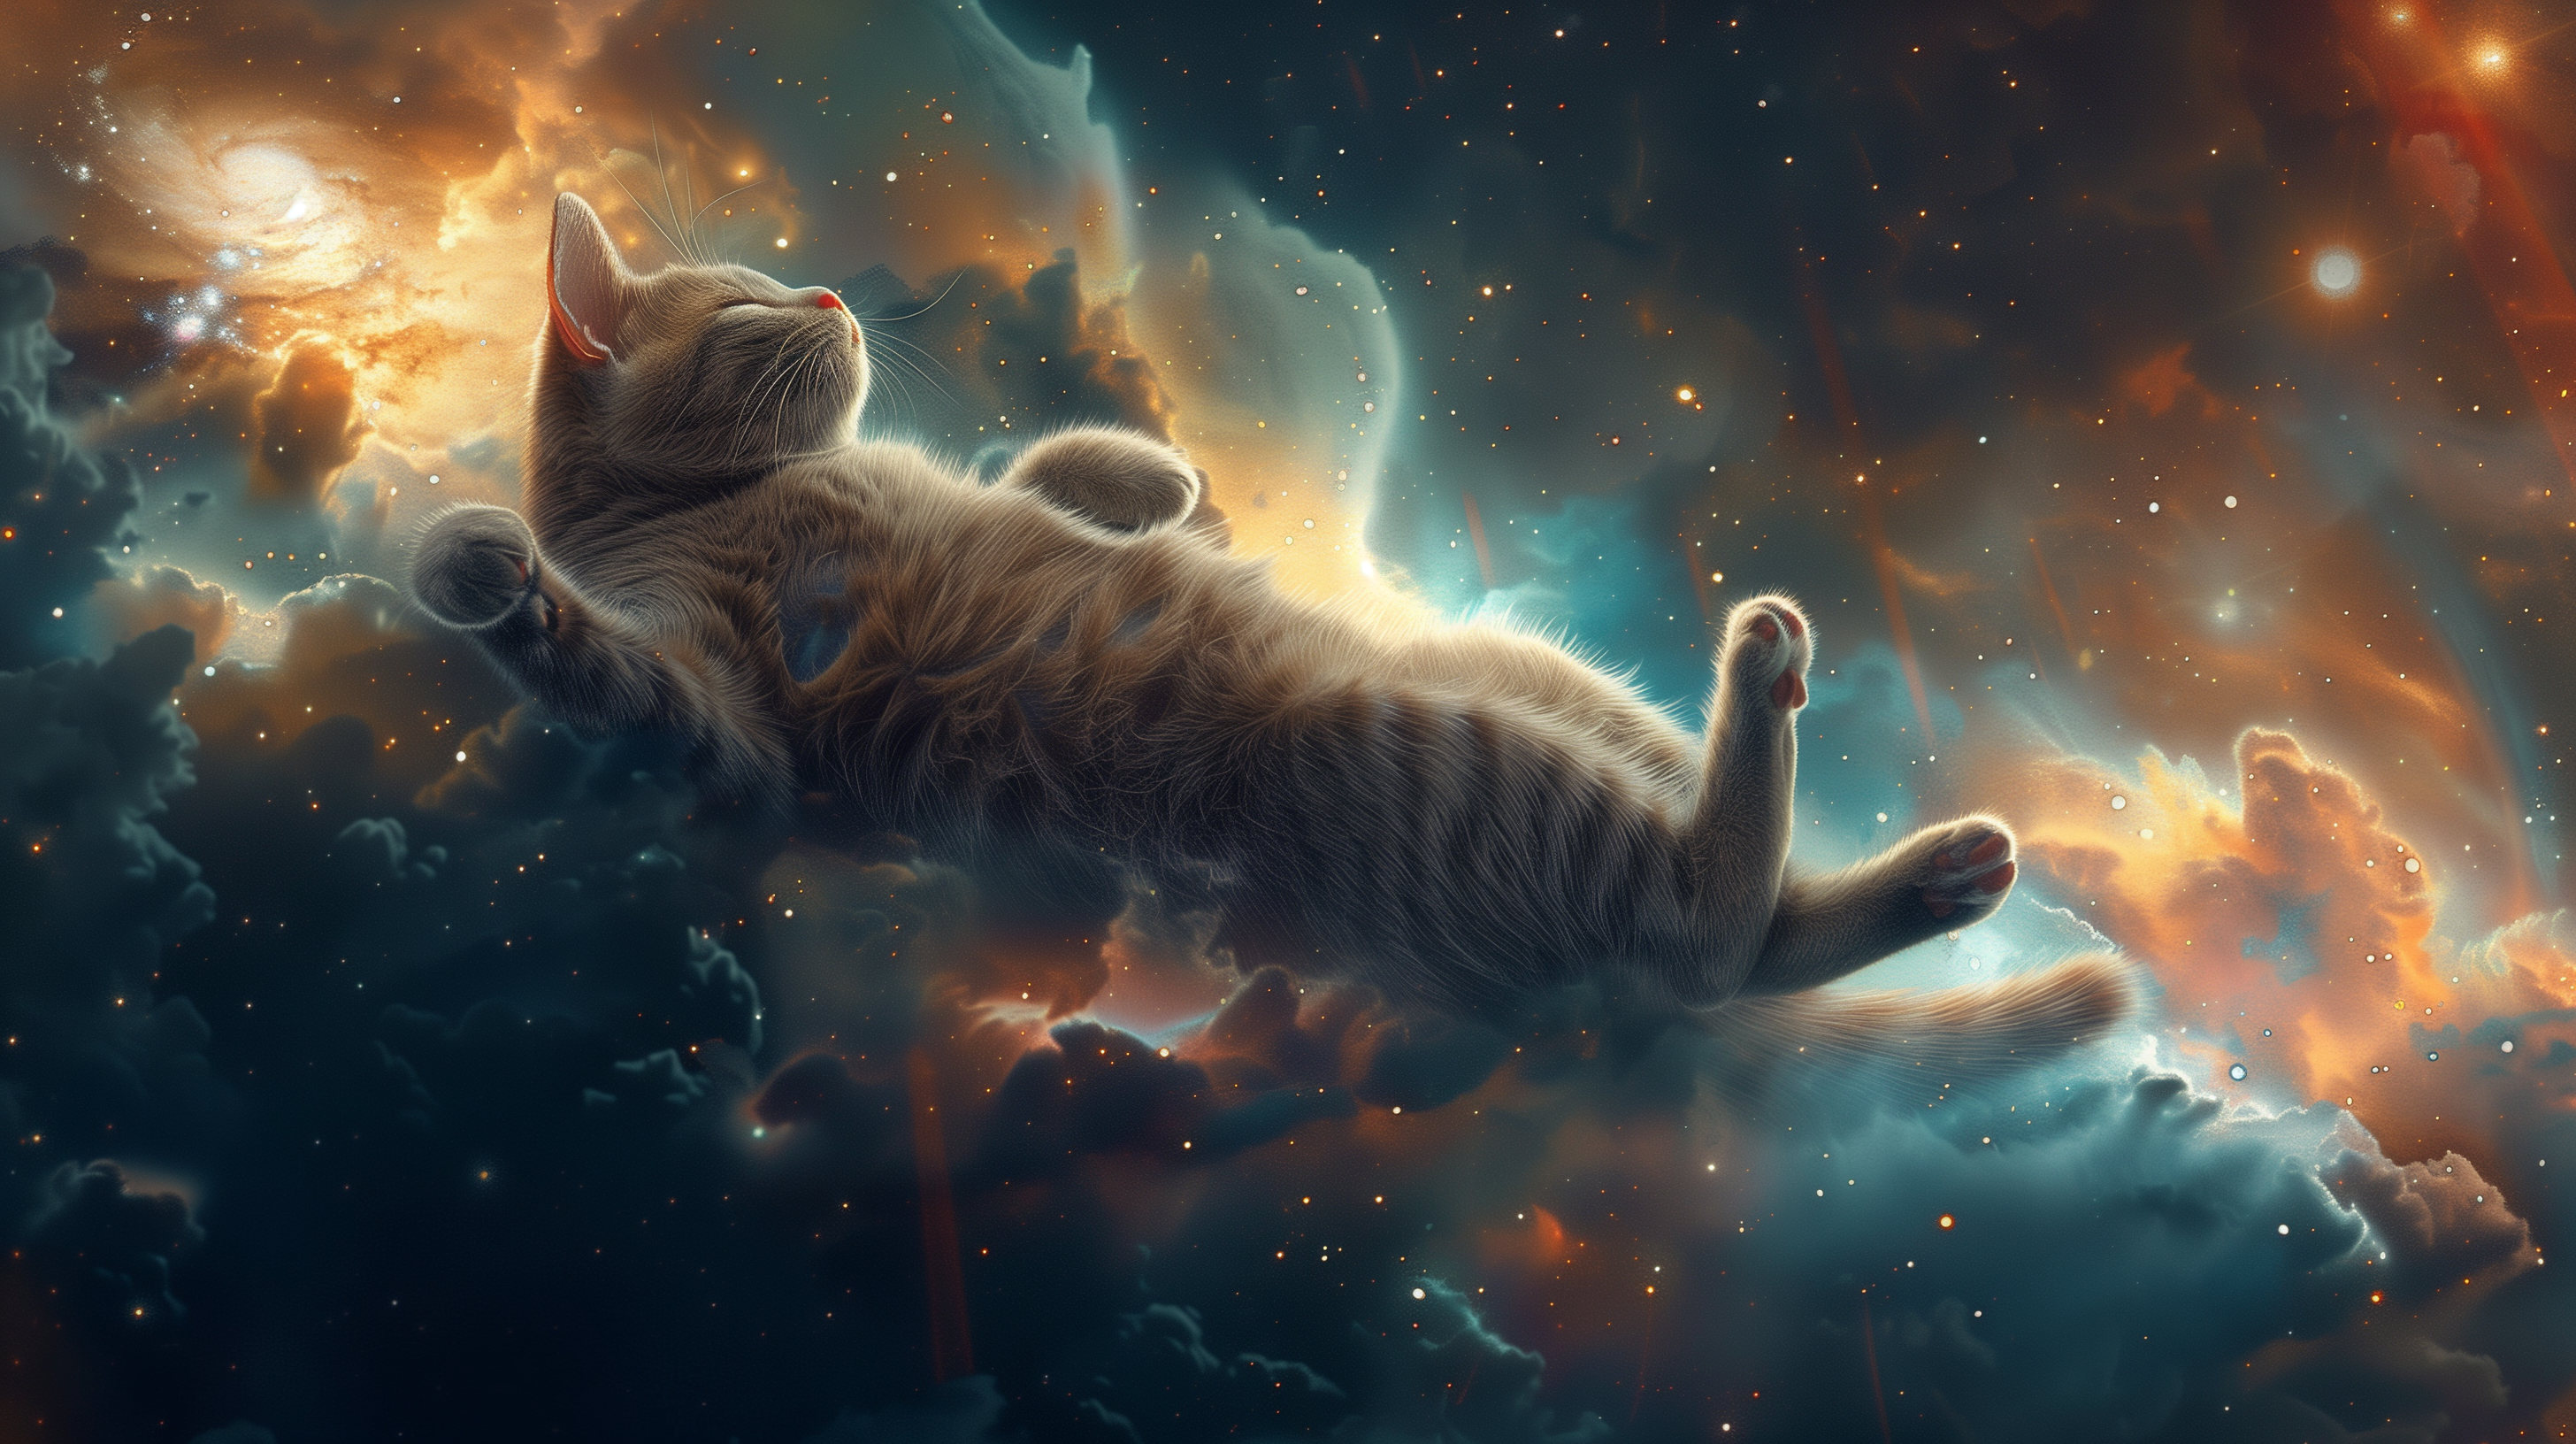 A cat in space